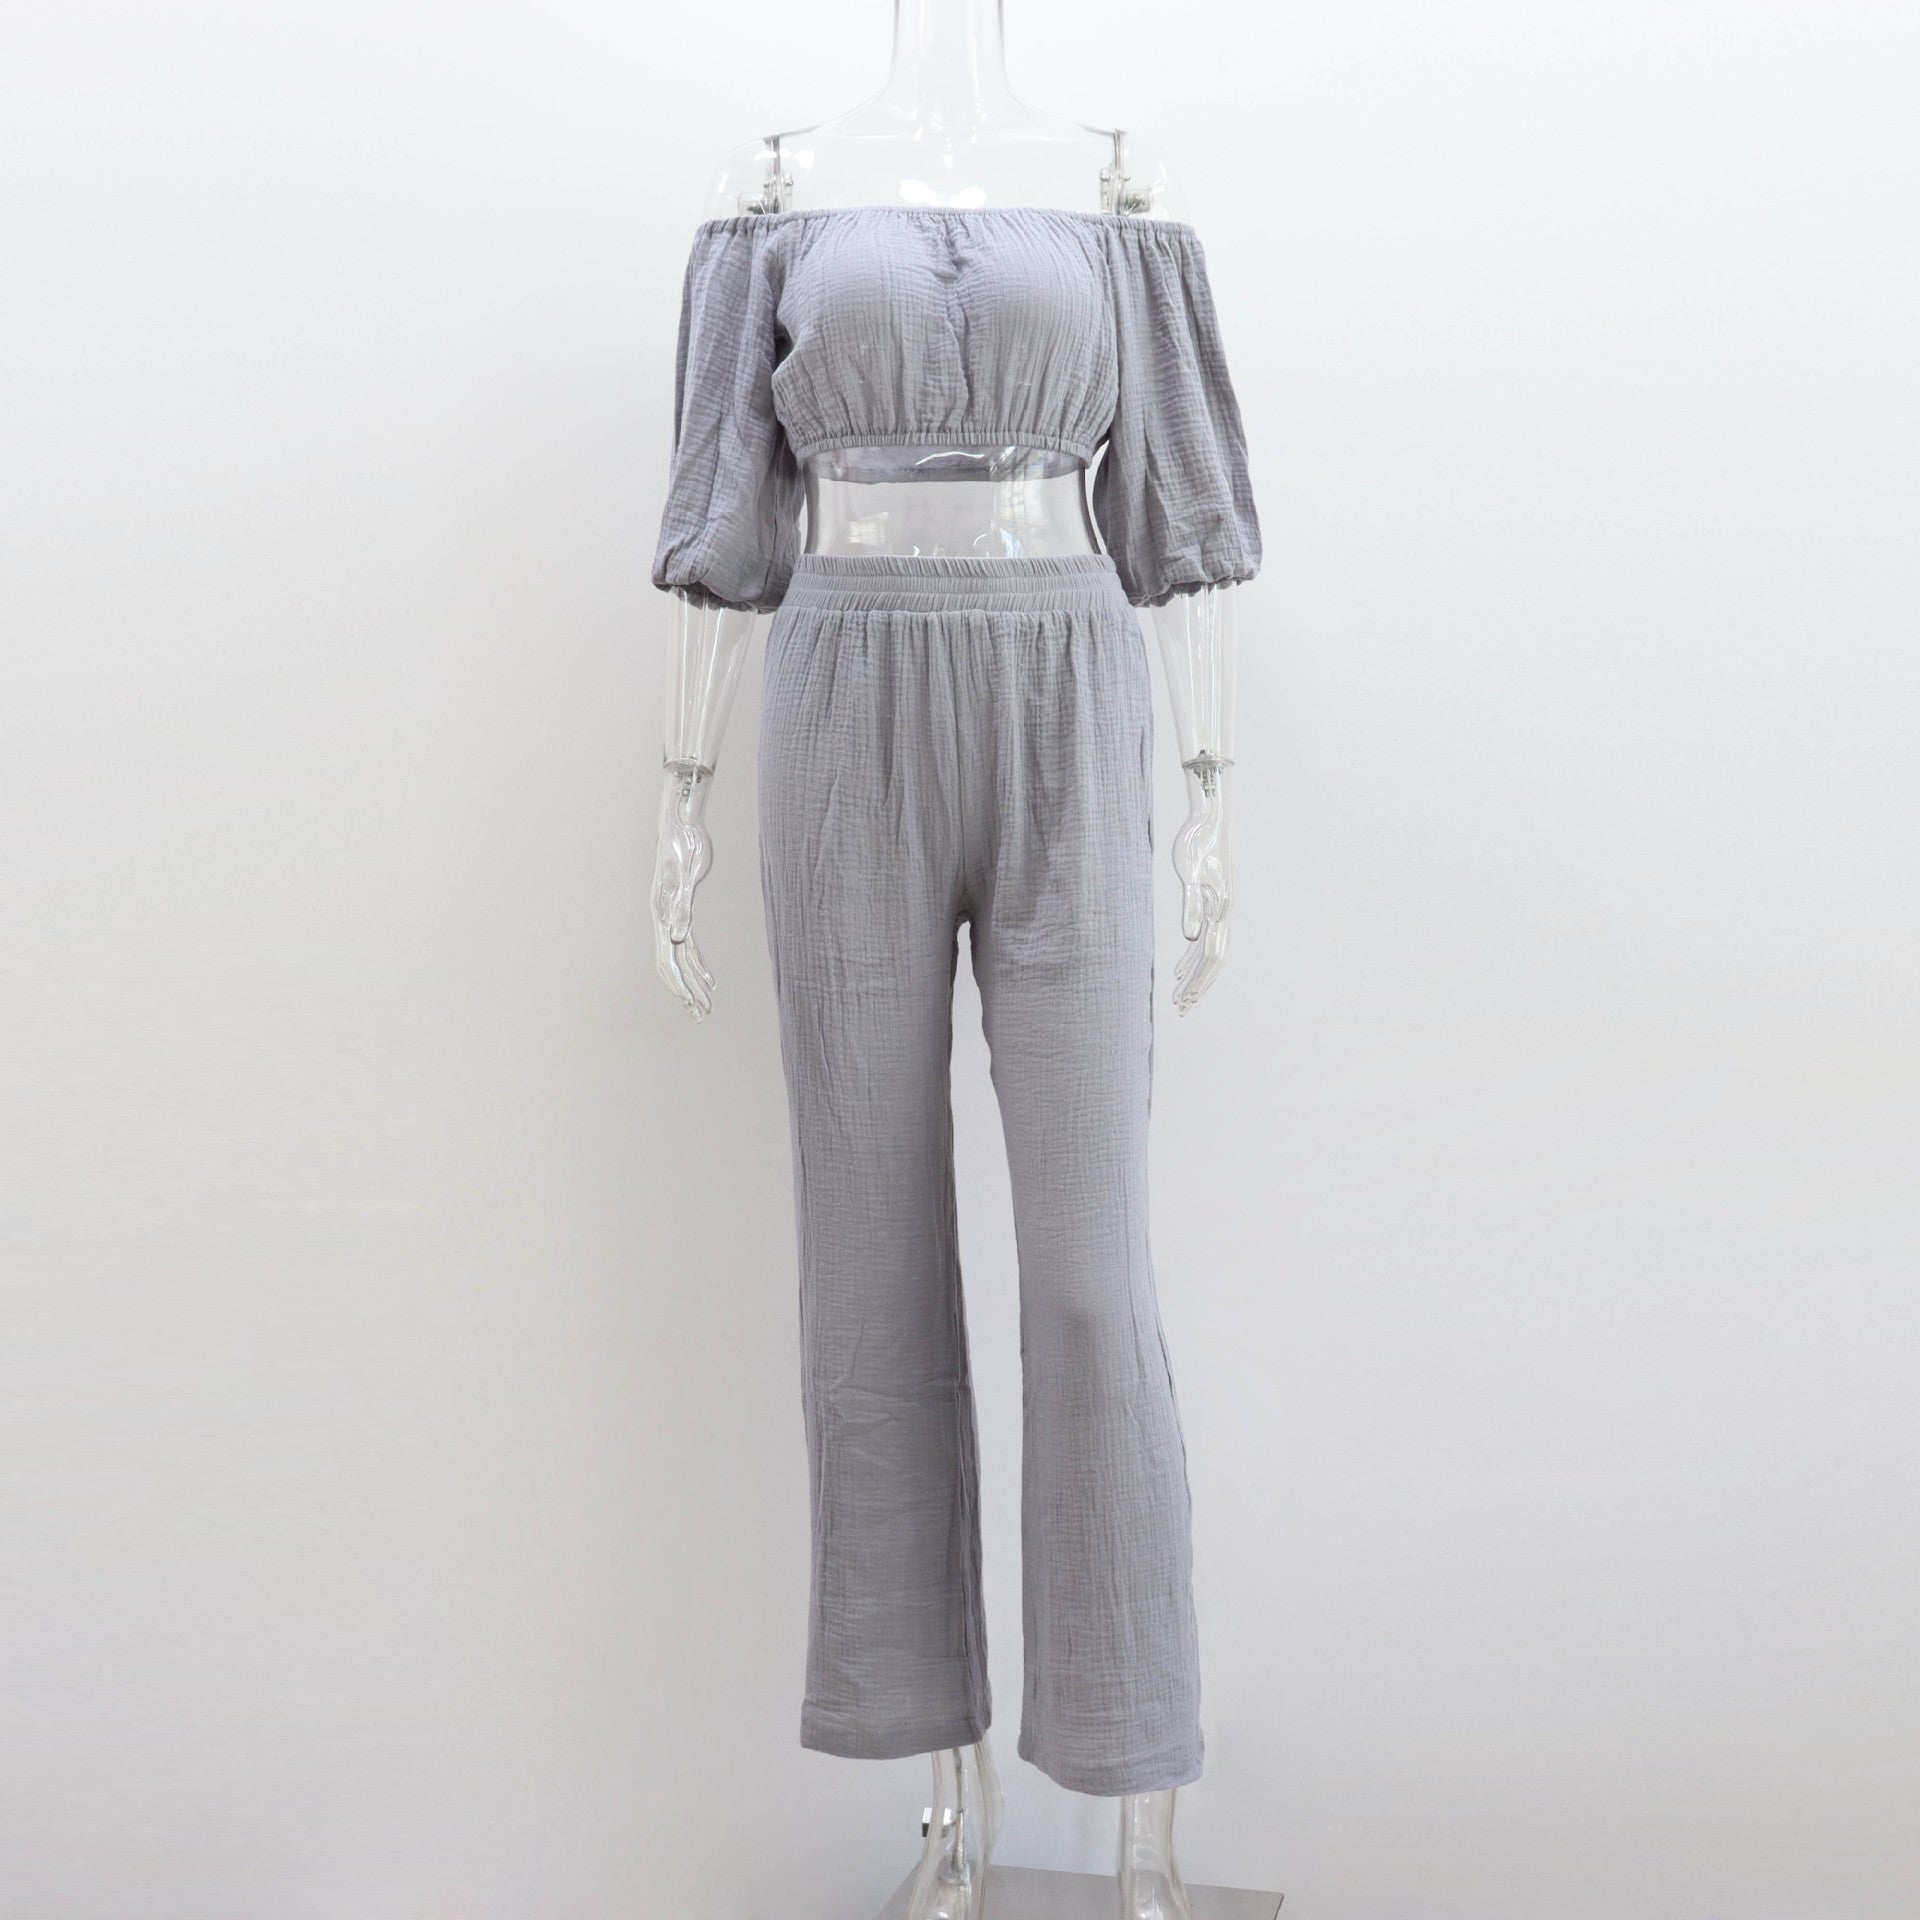 Pants set- Women's Cotton Vacation Outfit Set - Crop Top & Pants- - Chuzko Women Clothing